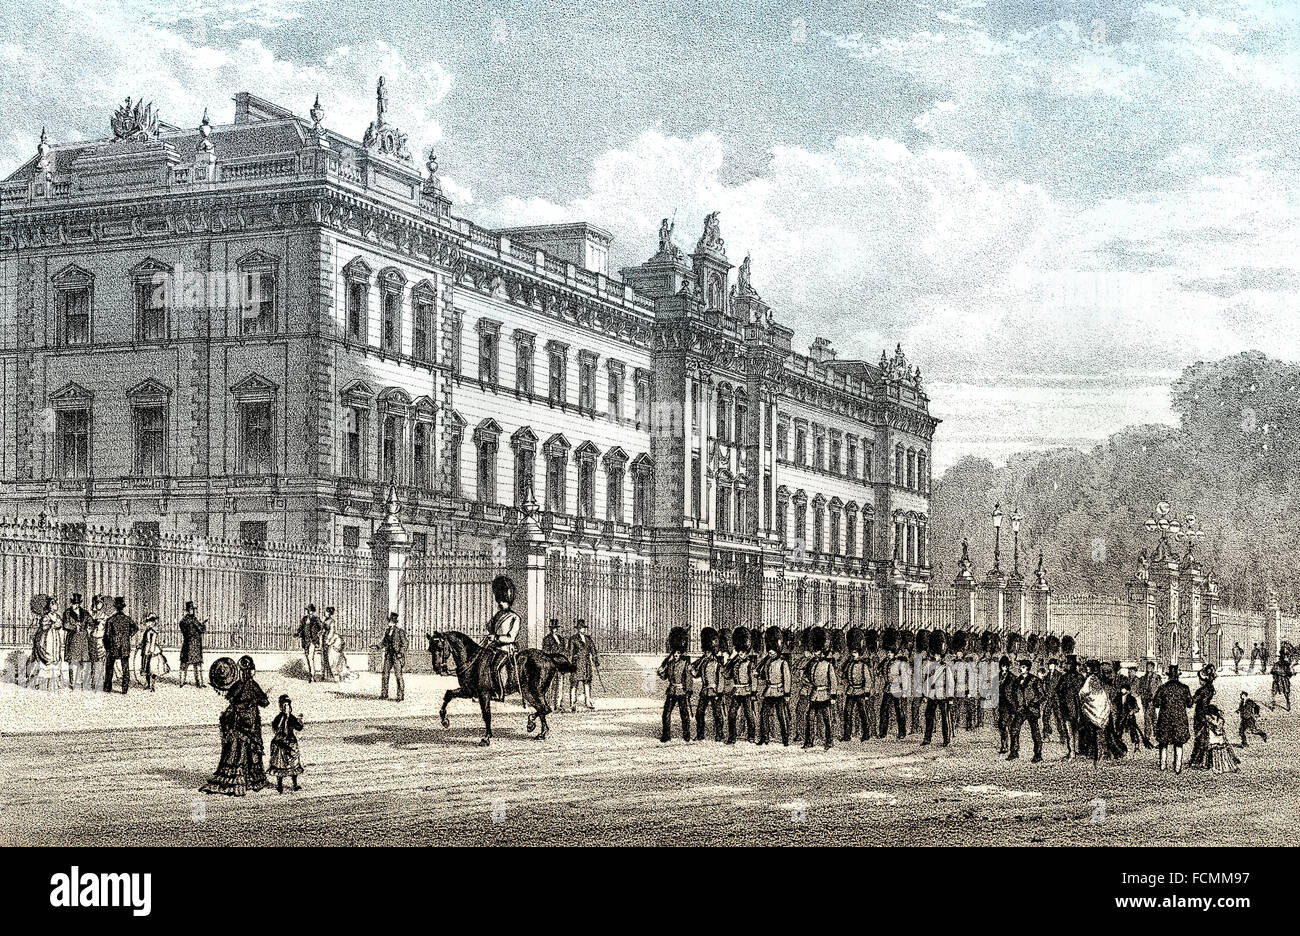 Le palais de Buckingham, 19e siècle, l'ancienne résidence du monarque régnant du Royaume-Uni, Londres, Angleterre Banque D'Images